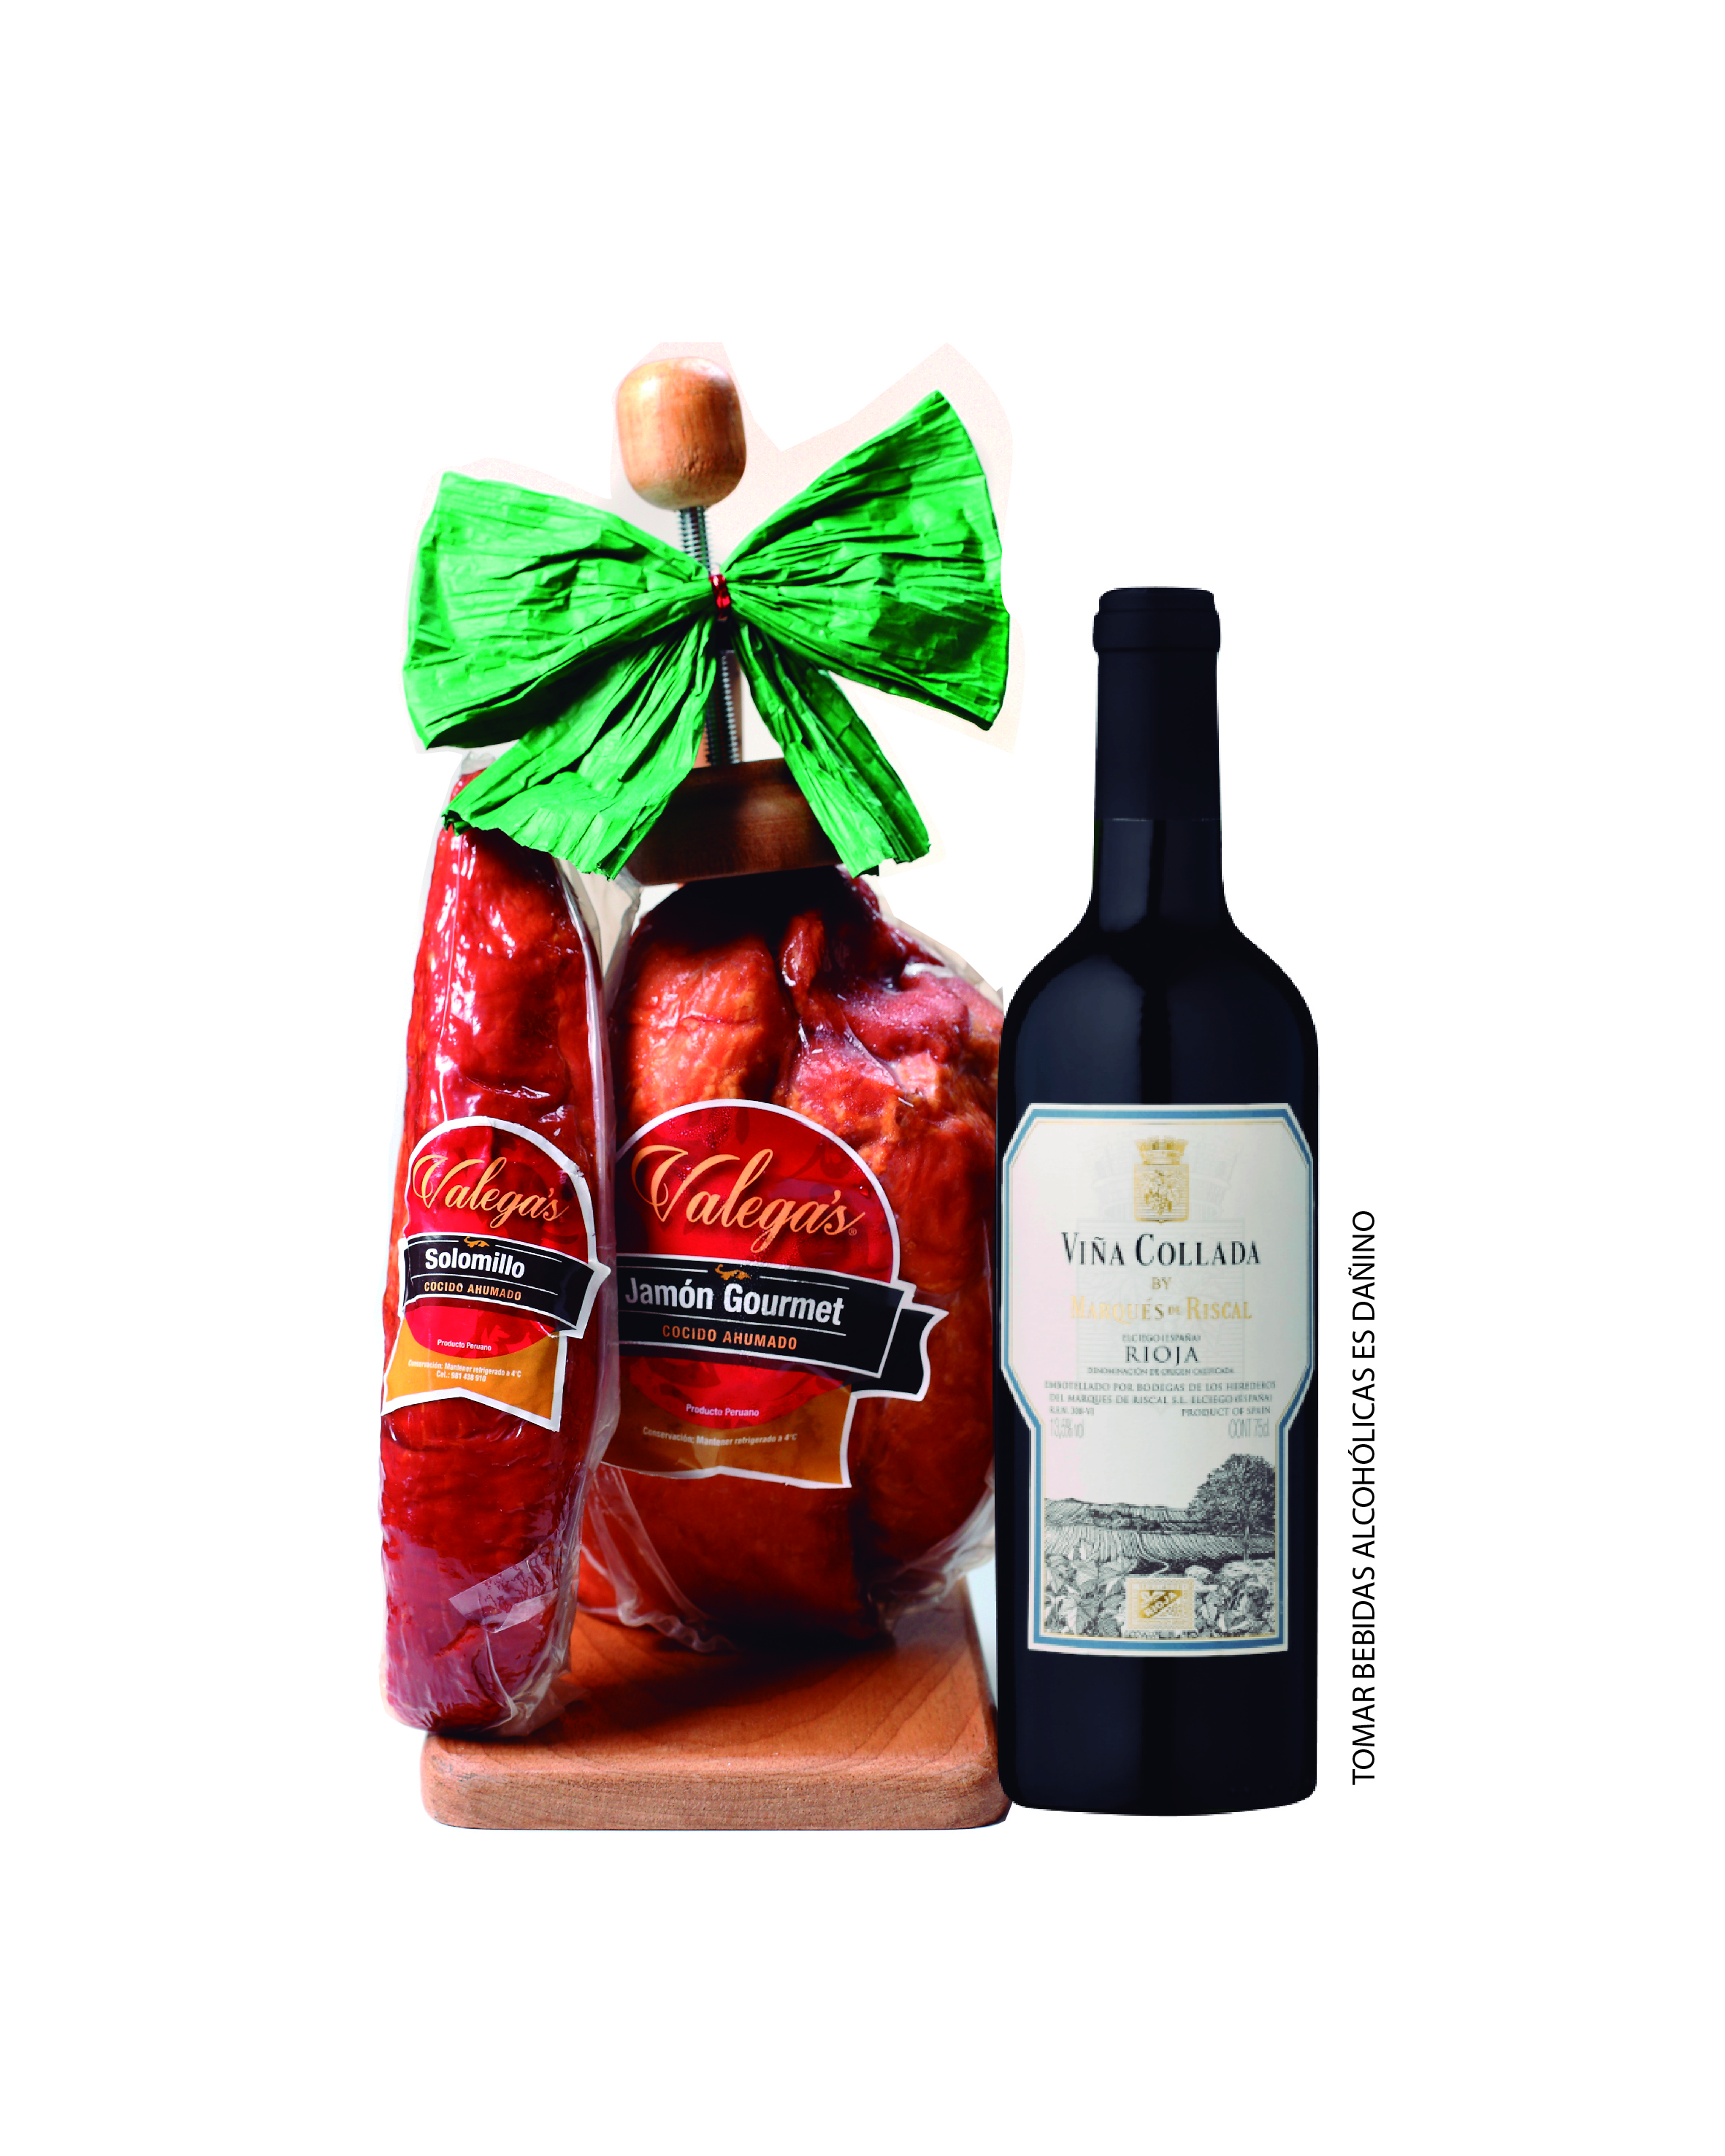 Jamón Gourmet de 2.7kg con parador de madera acompañado por un vino Rioja de Marqués del Riscal y 350gr de solomillo.
